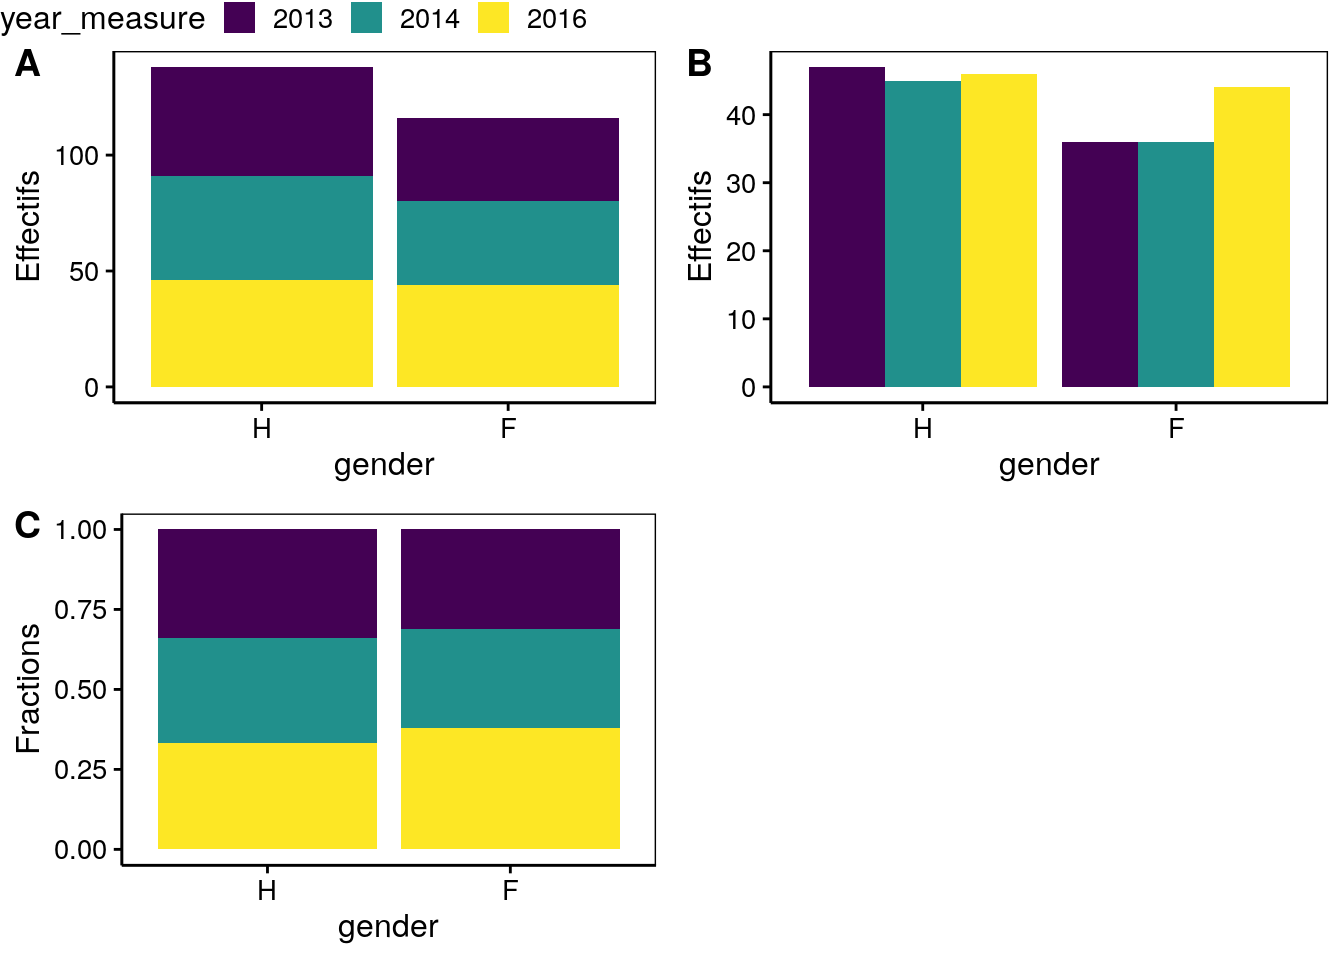 Dénombrement des hommes (H) et des femmes (F) dans l'étude sur l'obésité en Hainaut en tenant compte des années de mesure (différentes présentations).